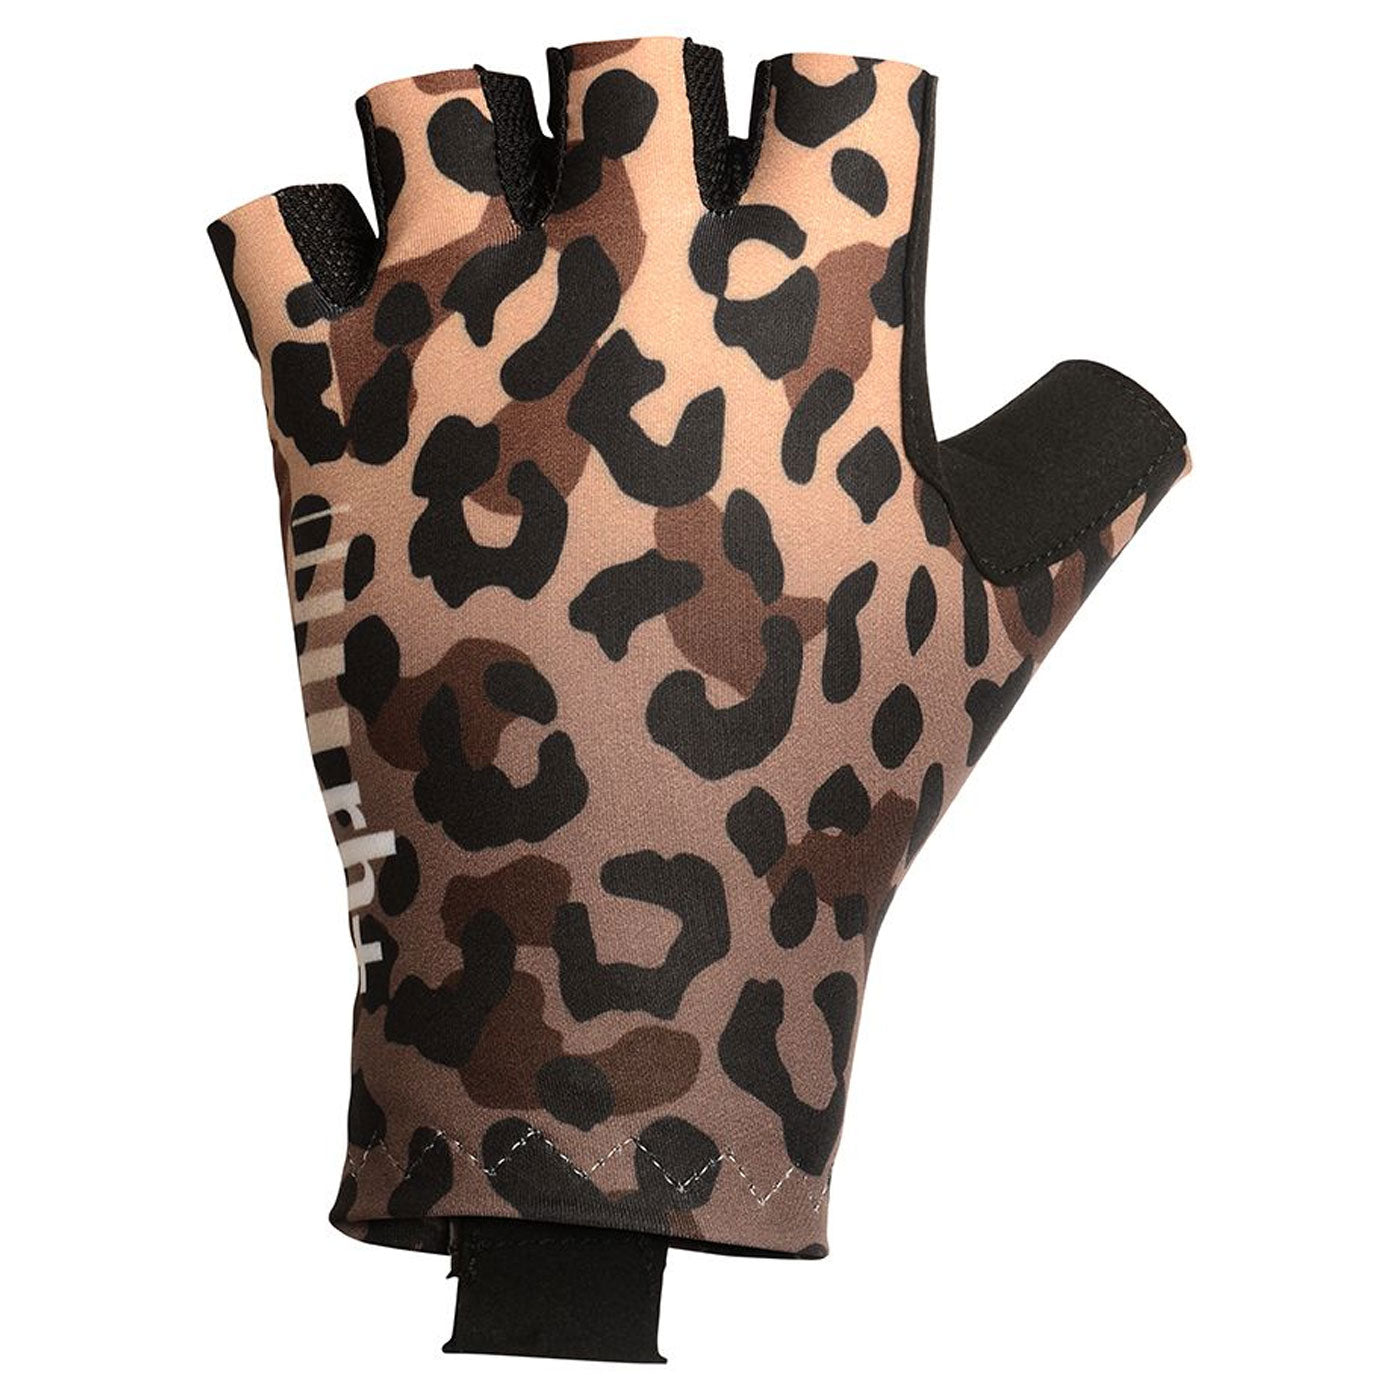 Rh+ New Fashion gloves - Brown